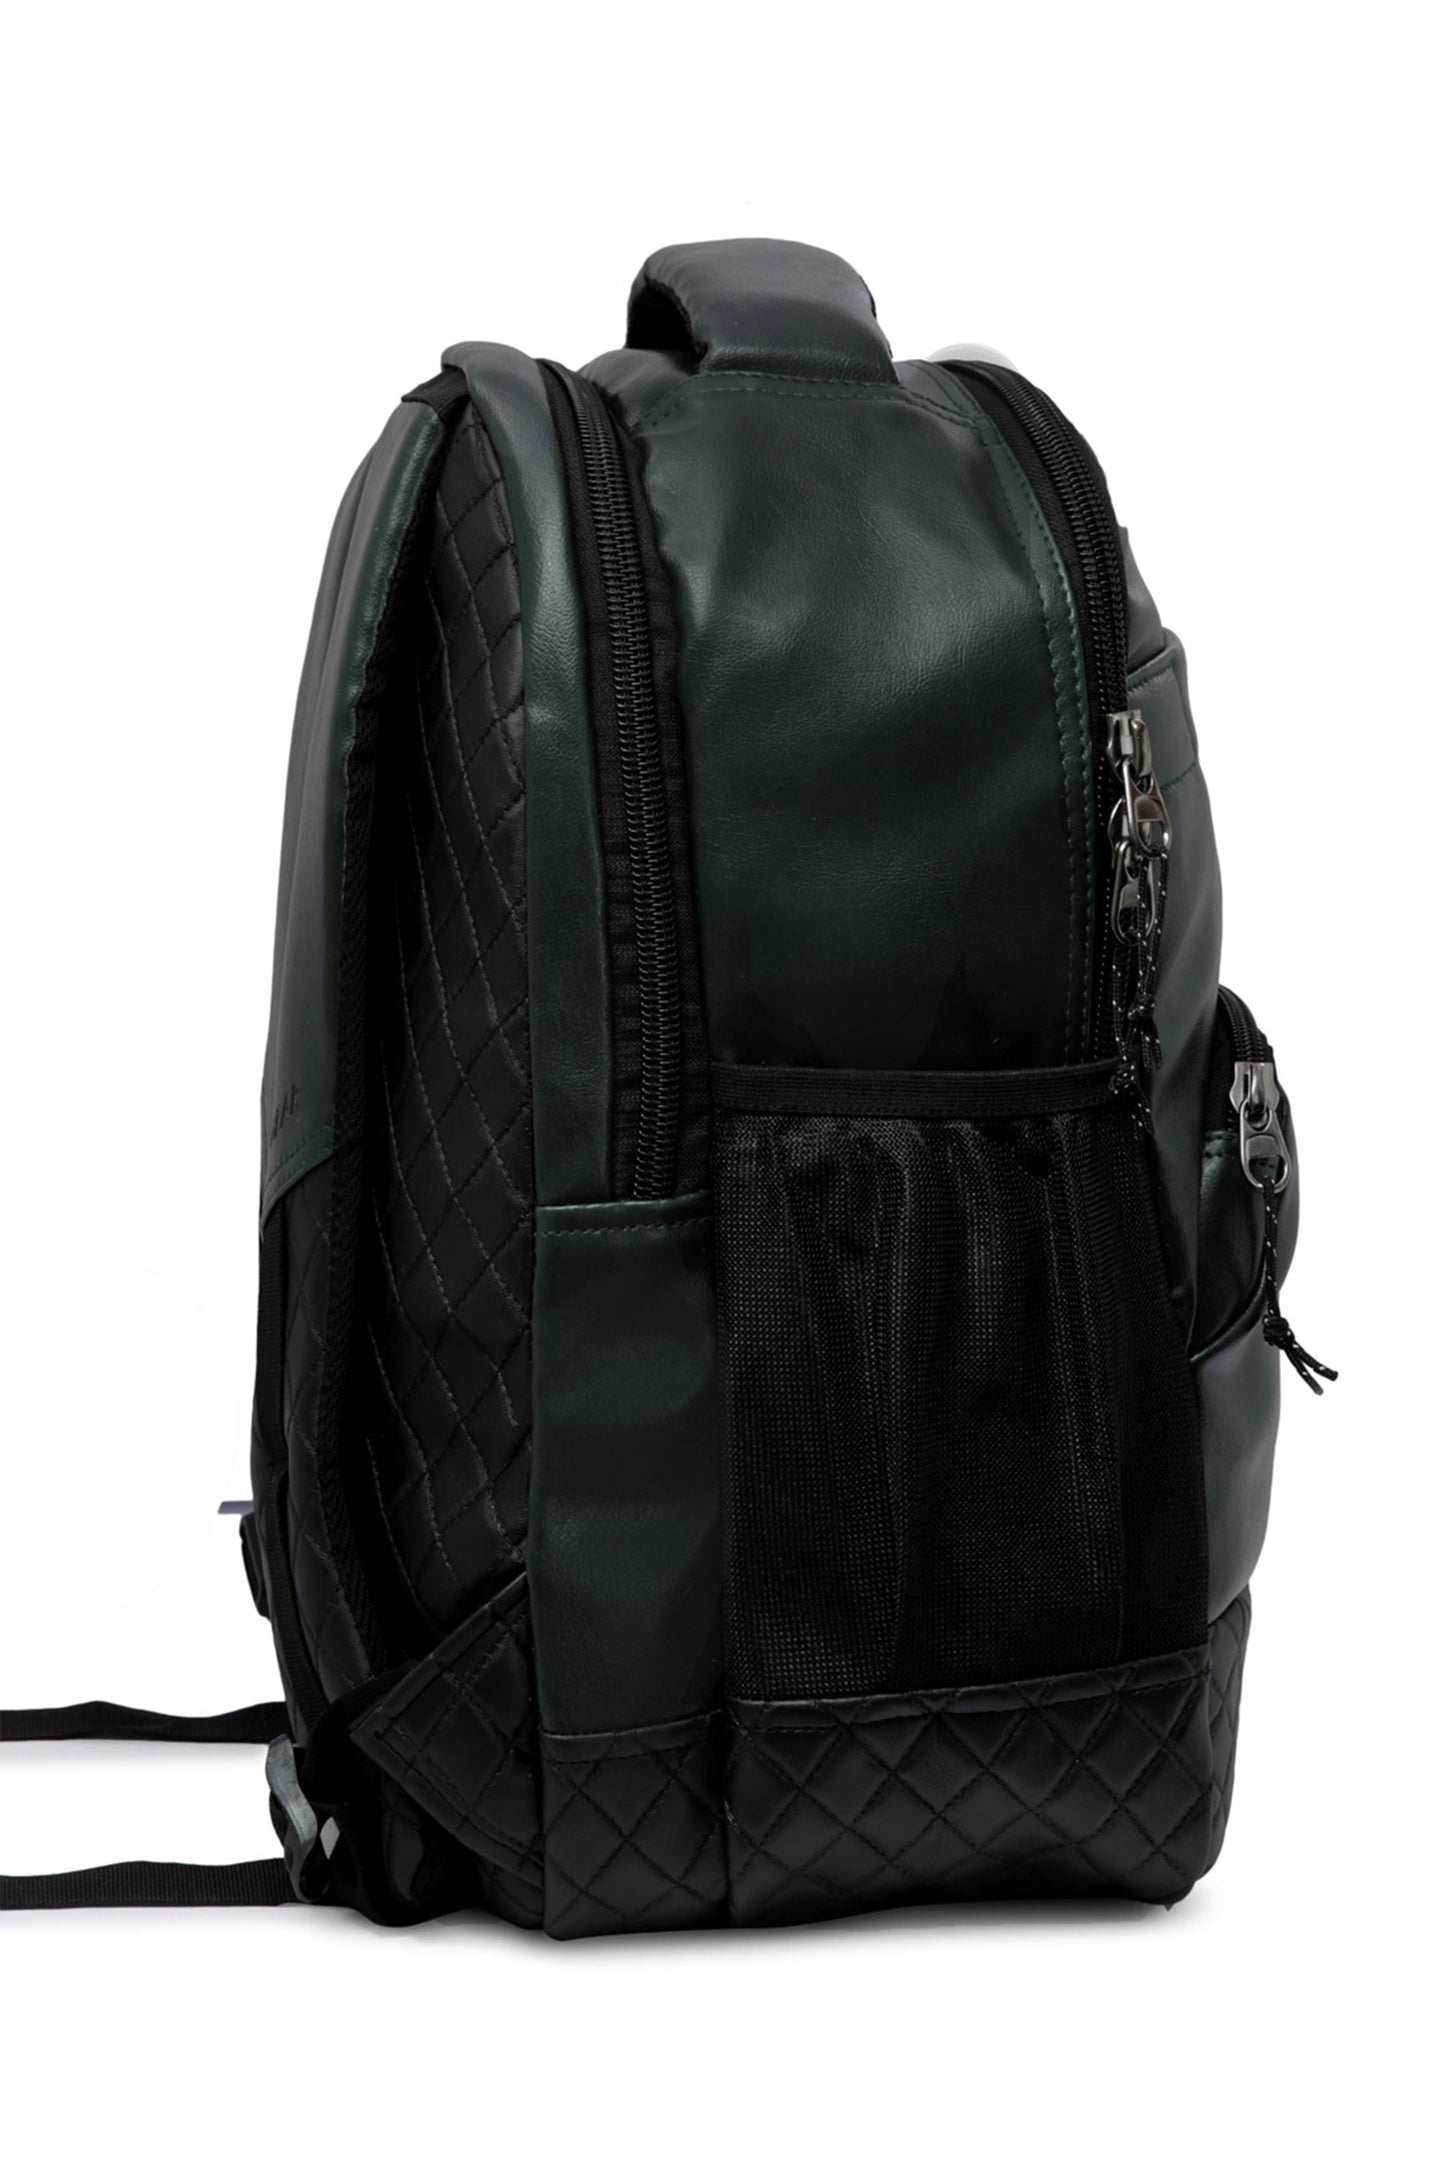 Luxur 23L Olive Green Laptop Backpack